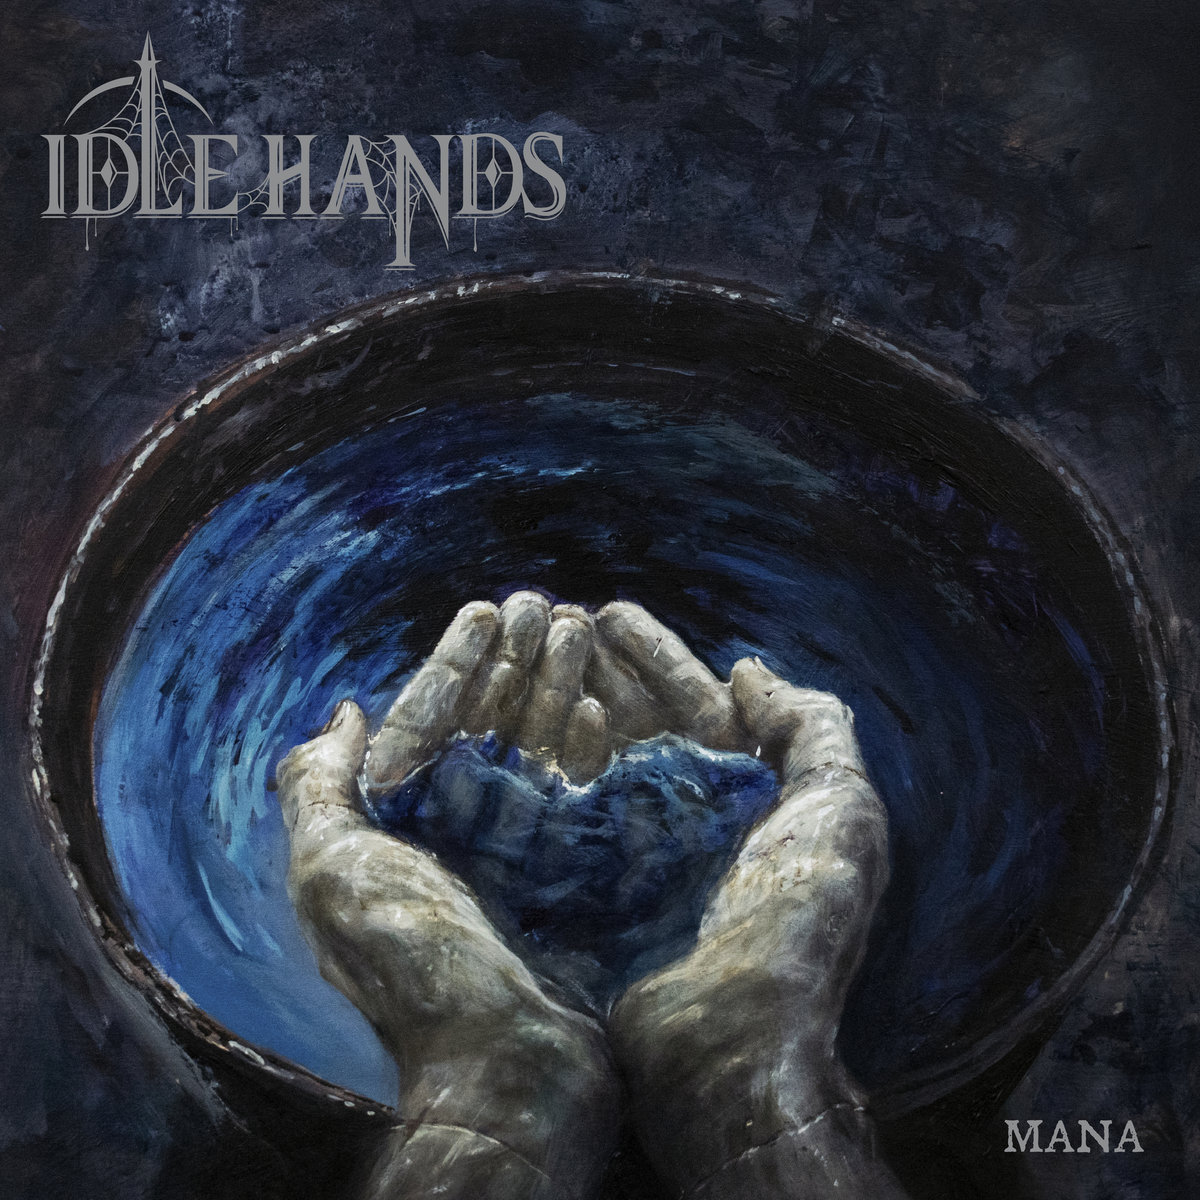 18. IDLE HANDS - Mana<br />Ihletett lemez, kerek, szinte tökéletes. Heavy metalról van szó darkos, new wave-es hatással és lazán, zsigerből felnyomtak egy tökéletes lemezt.